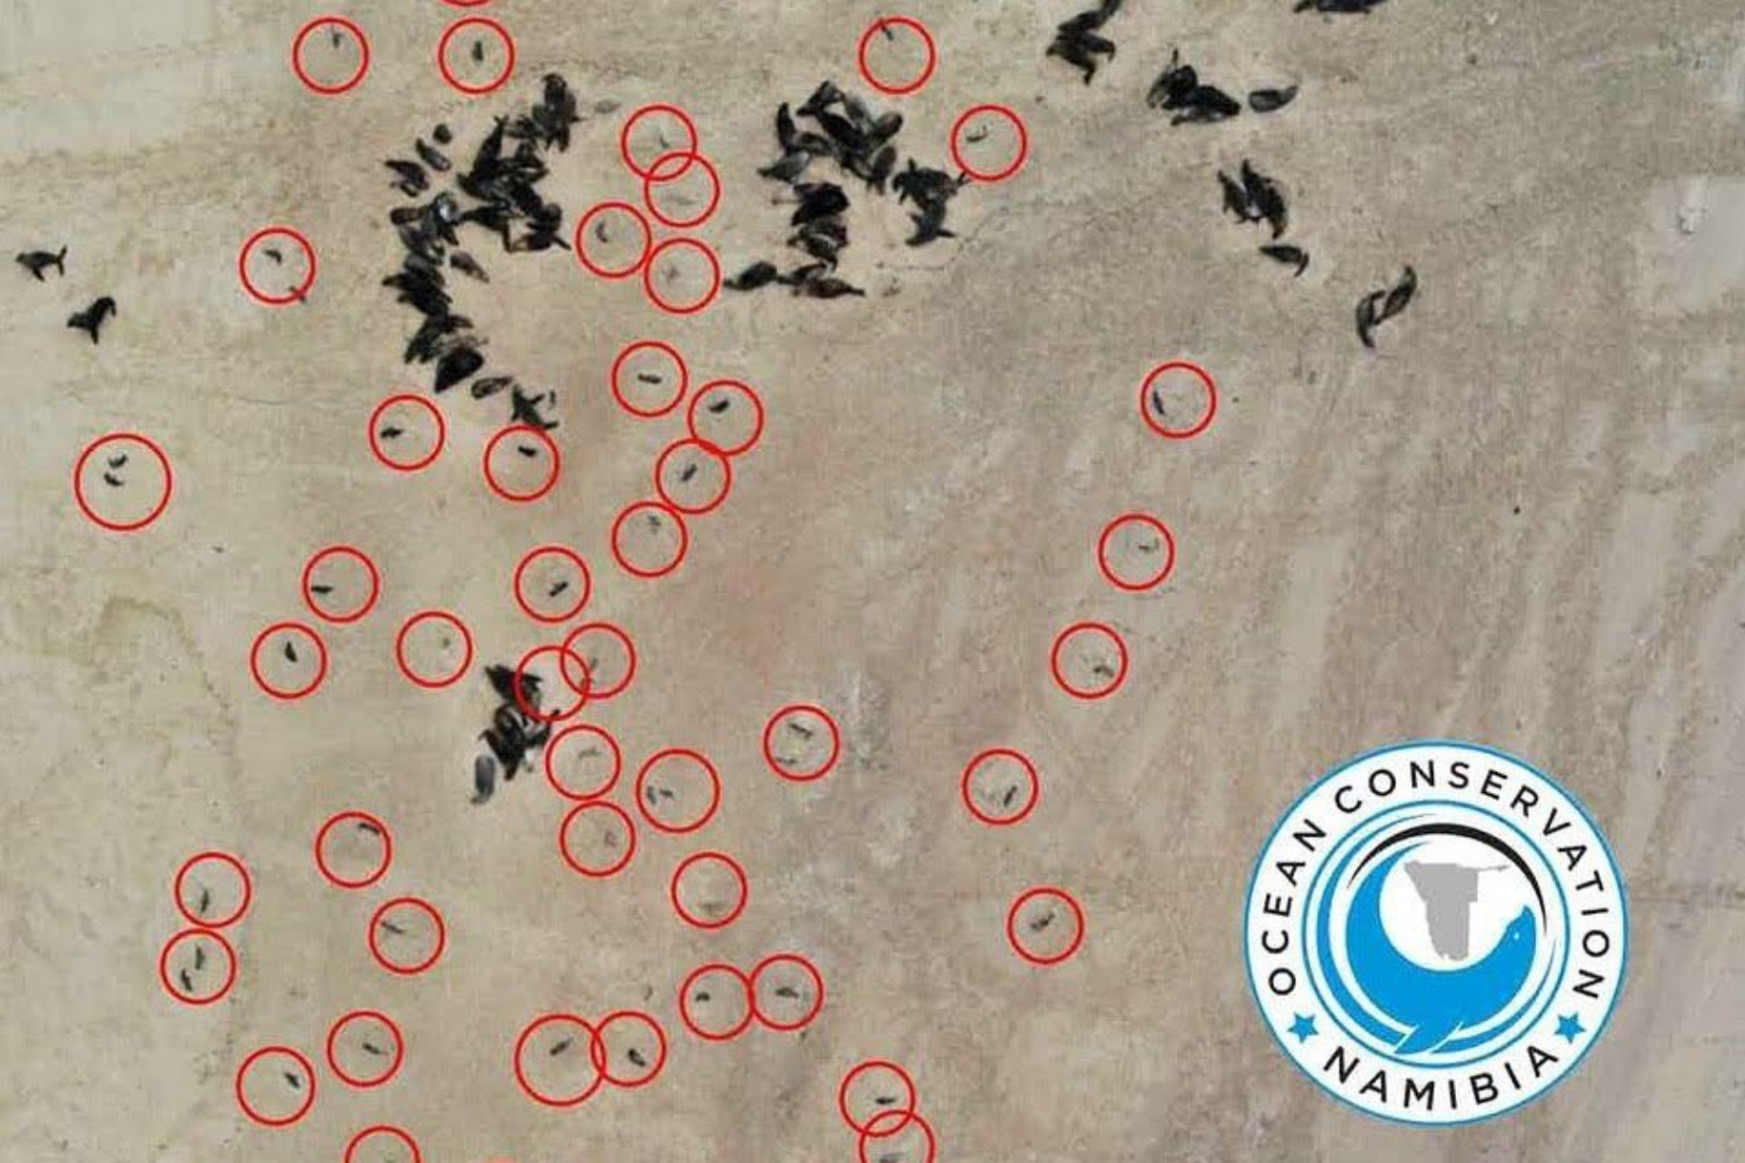 Ötezer fókabébi tetemét mosta partra a tenger Namíbiában